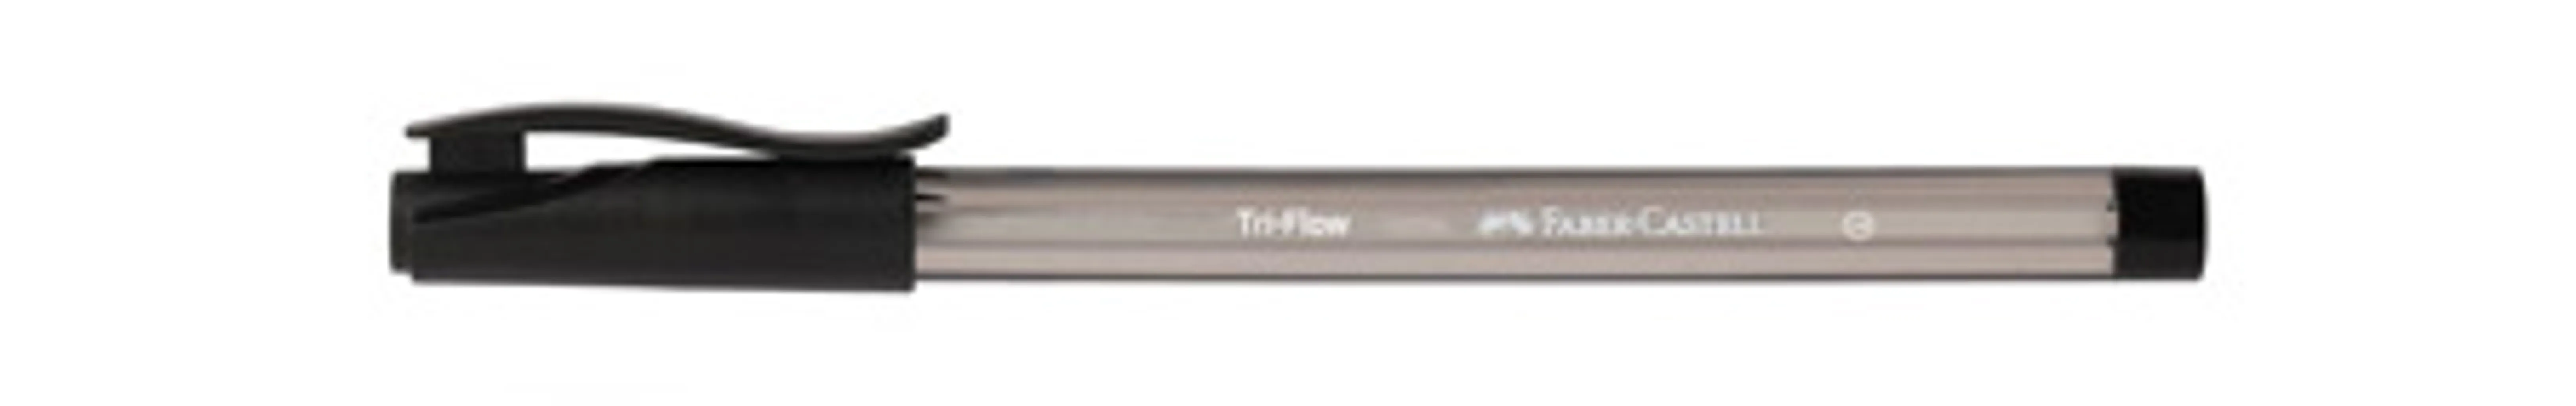 triflow ballpoint pen